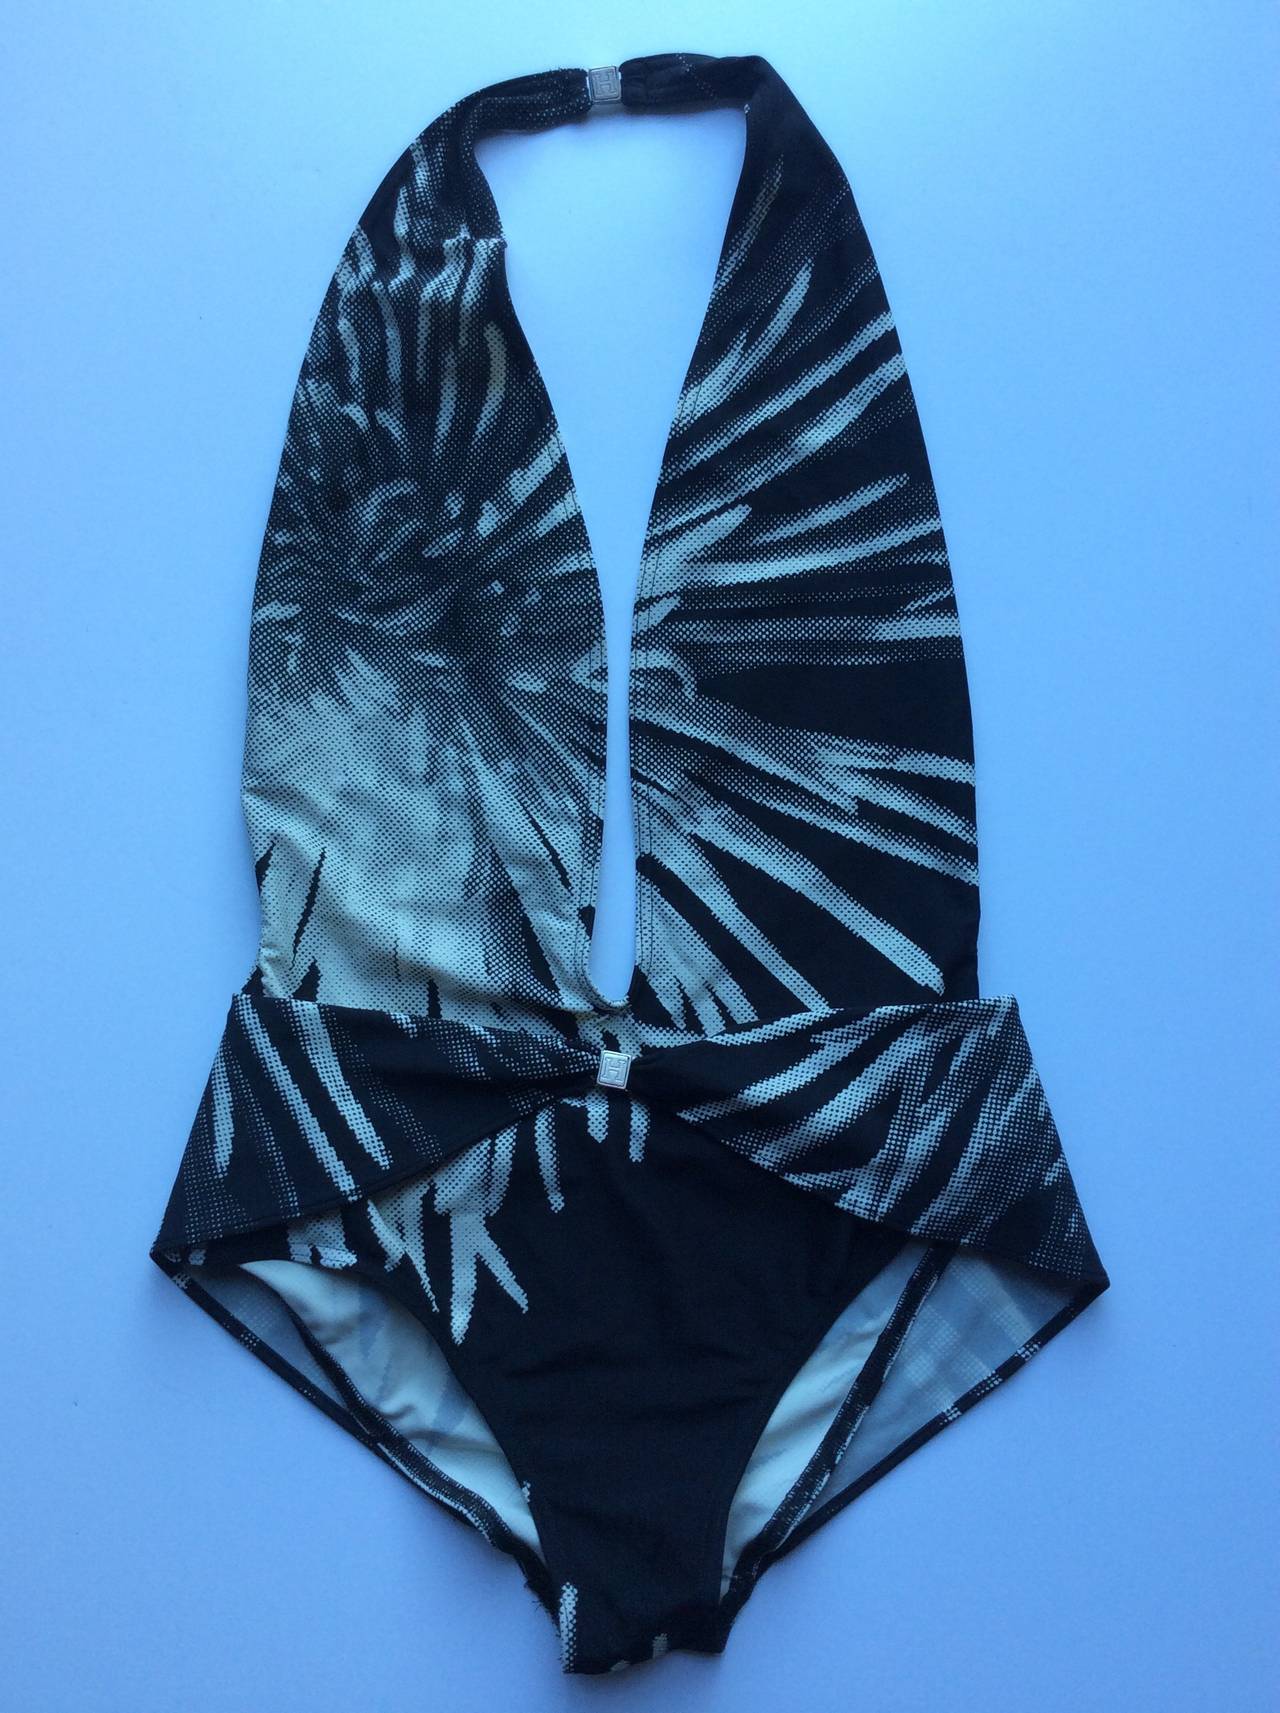 Hermes Paris Rare Plunging Monokini Bathing Suit For Sale 3